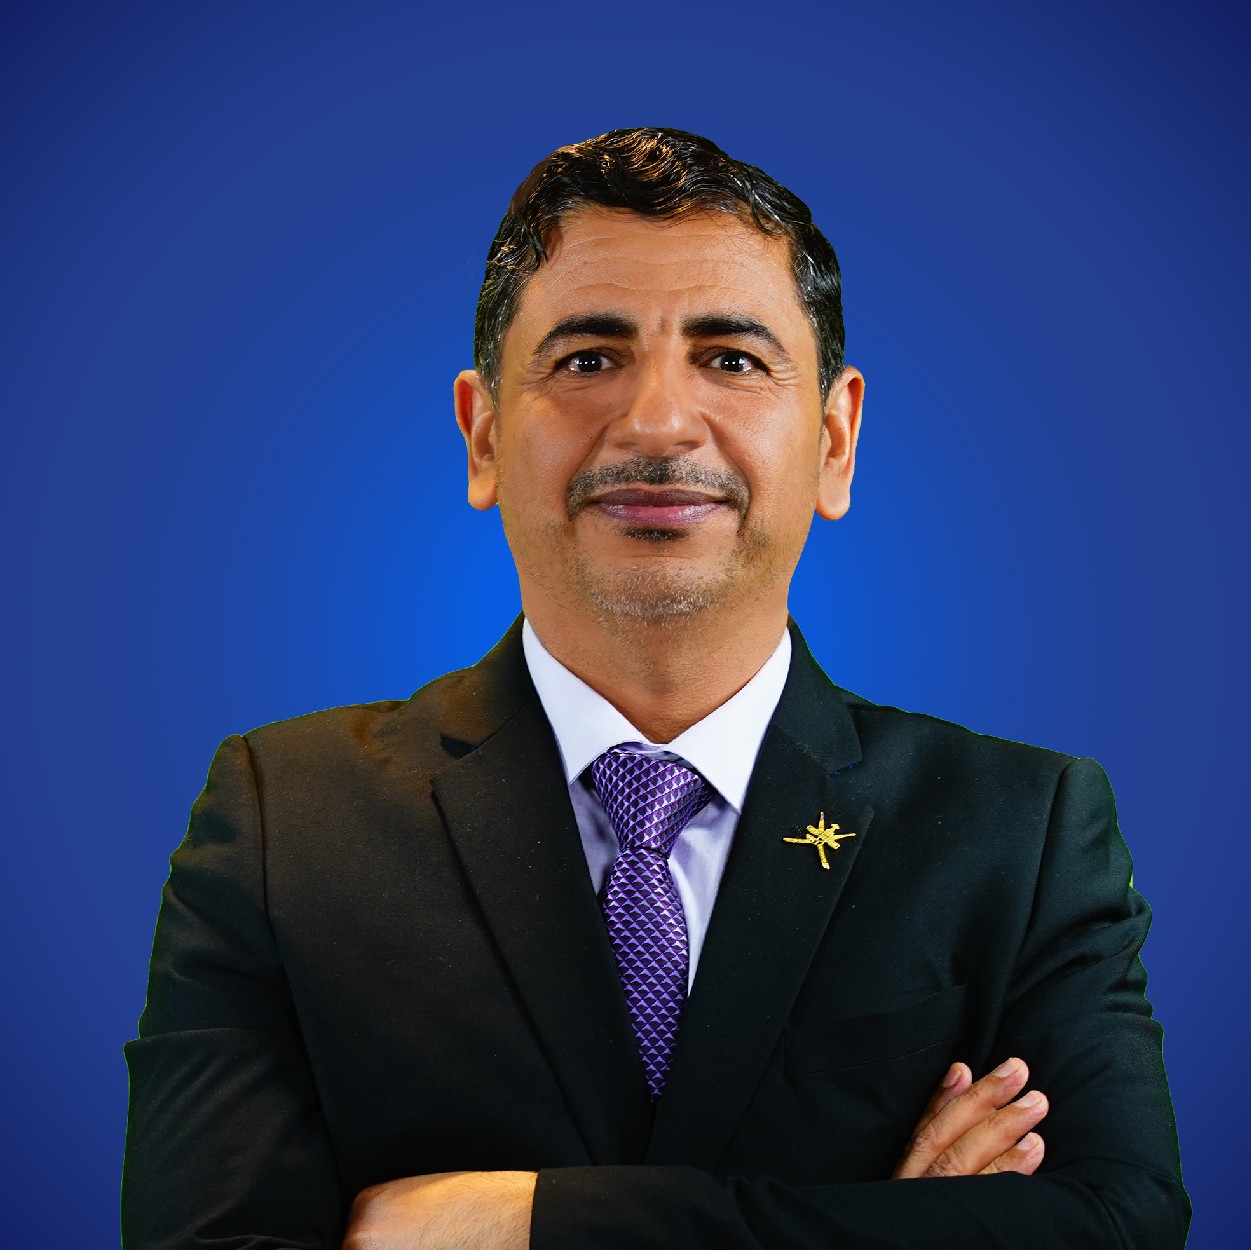 Dr. Khamis Almazrouai